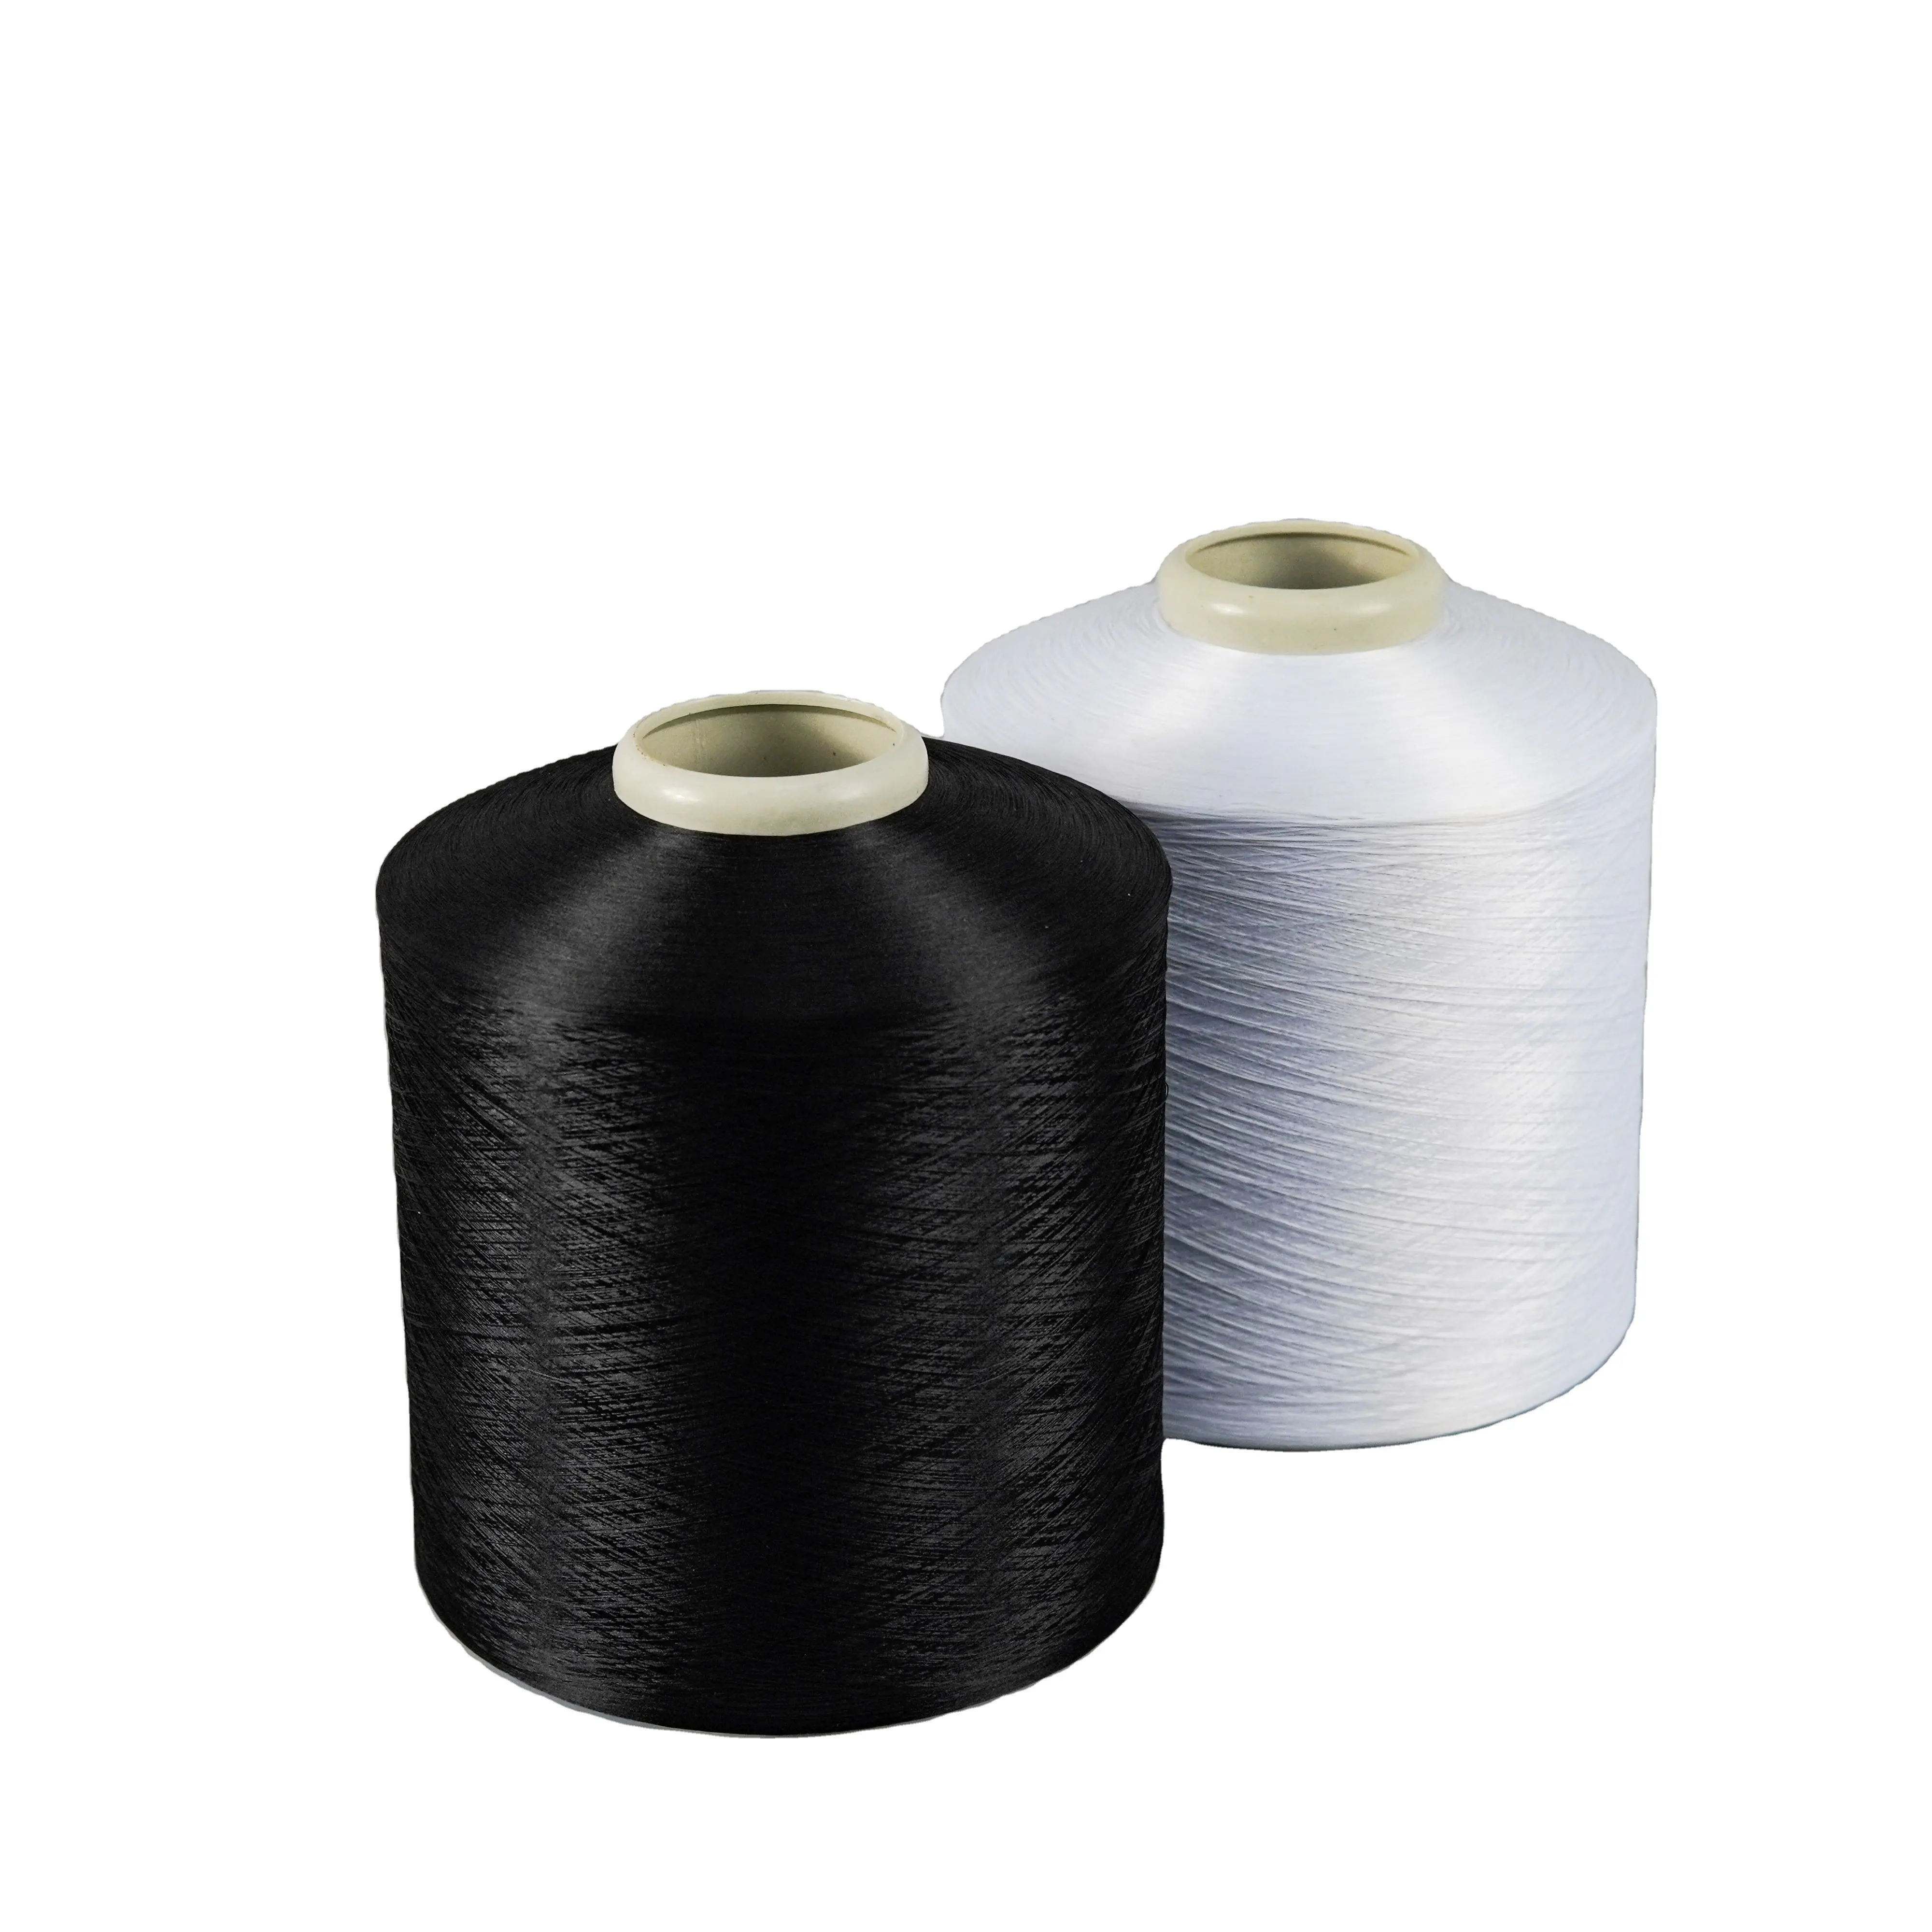 Xinglilai Raw white senorita sys pure 50d 24f 83dtex 36f poliestere dty filament yarn zero twist per tessuti per la casa lavorati a maglia